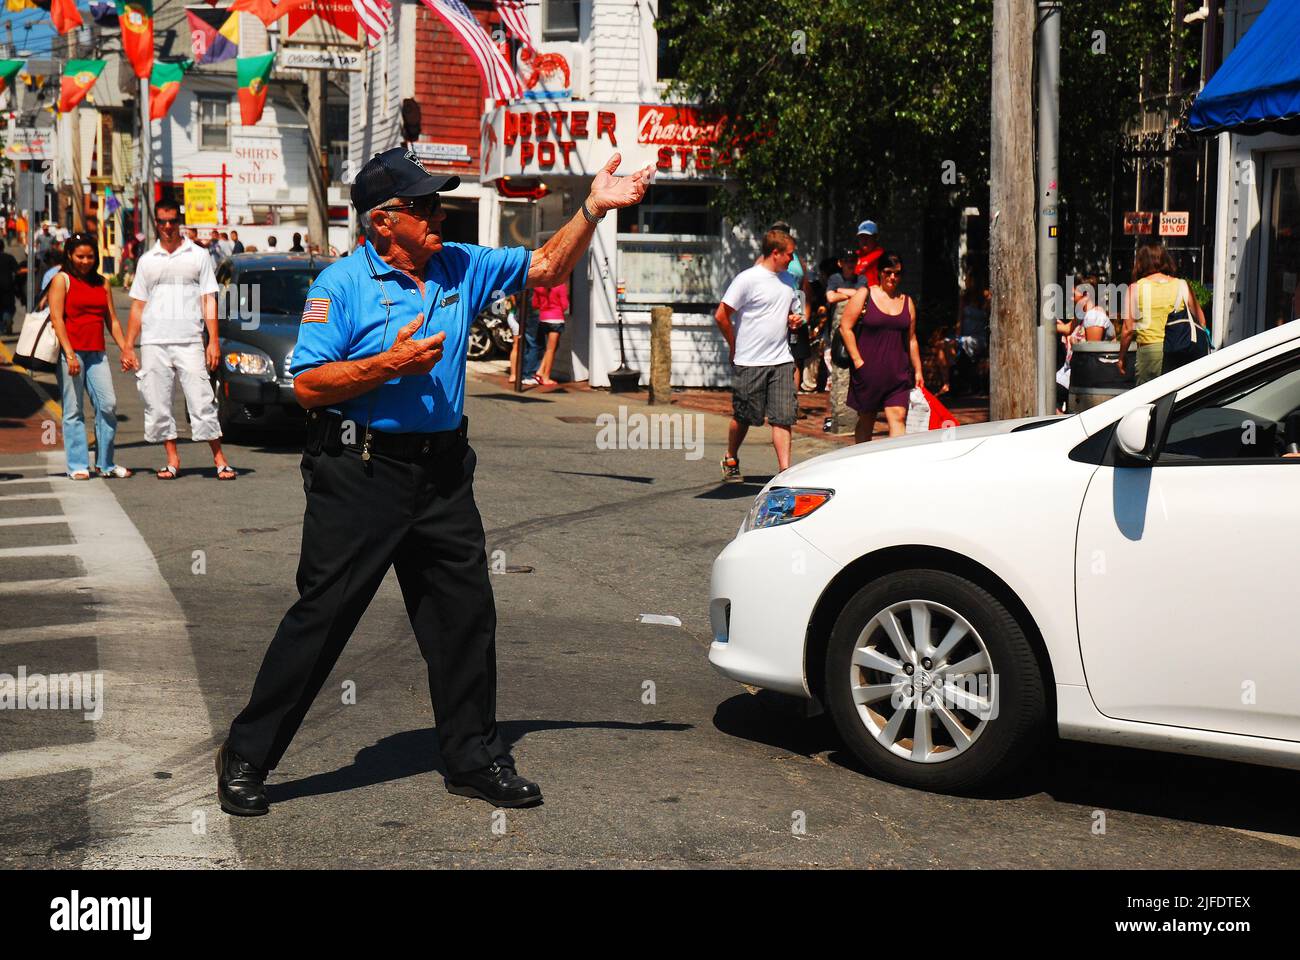 Le Dancing COP, Un agent de police de la circulation dirige les voitures en toute sécurité à travers une intersection très fréquentée pendant la saison estivale intense à Provincetown, Cape Cod Banque D'Images